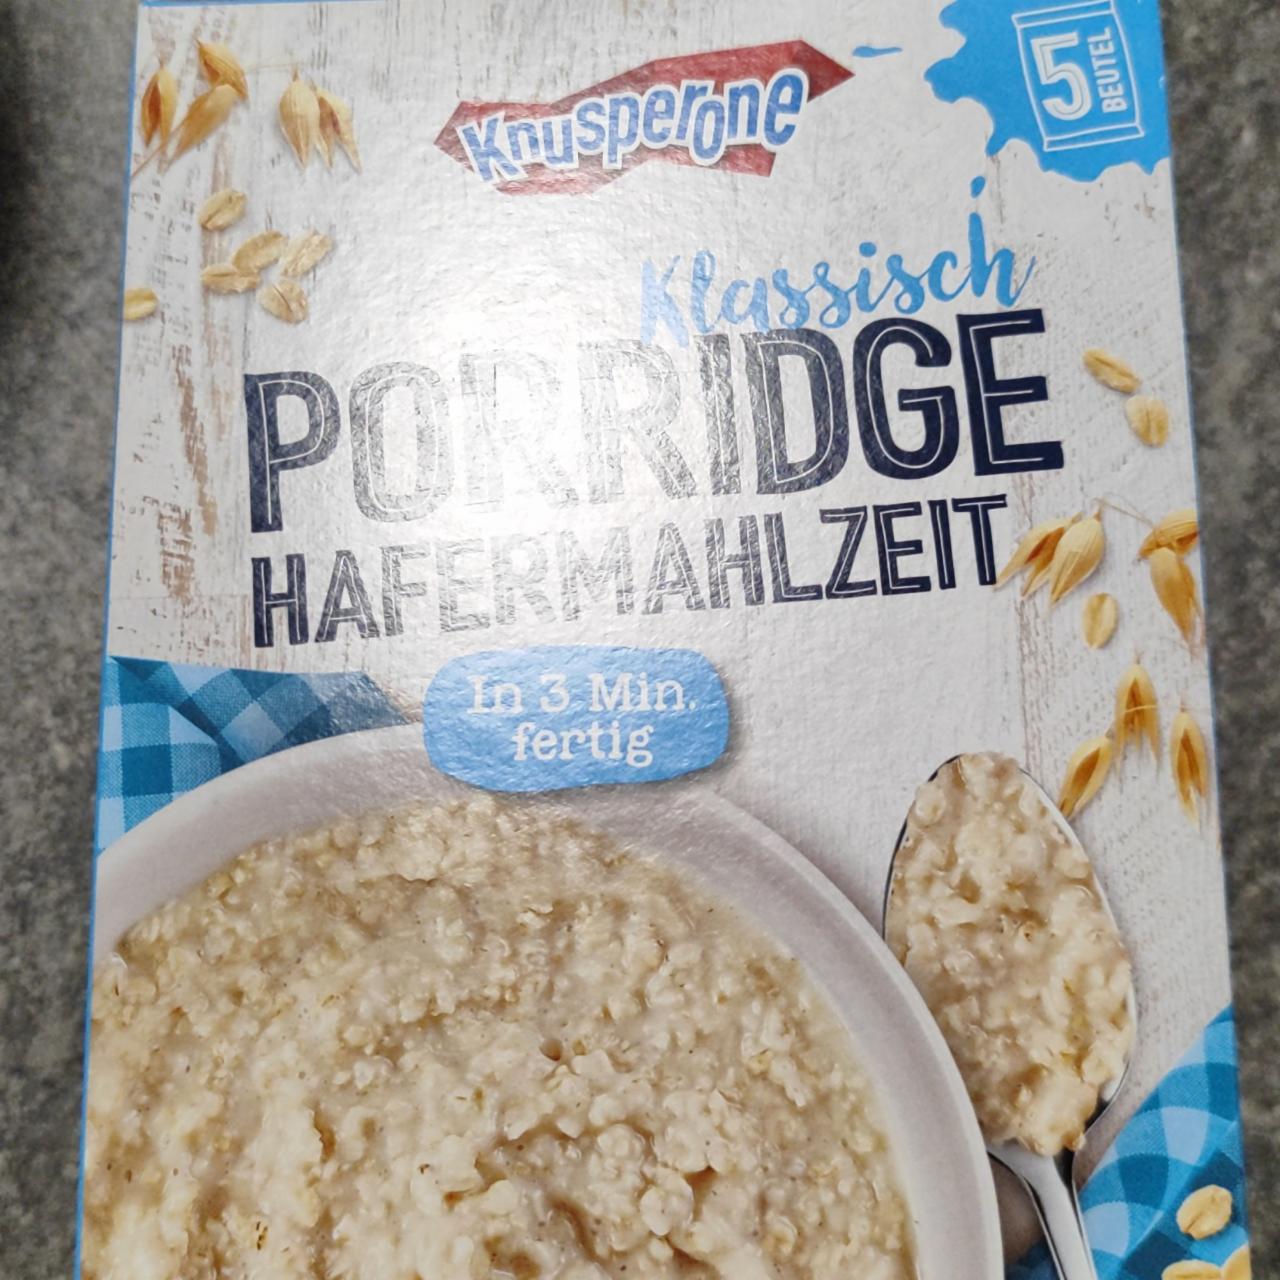 Фото - Porridge Klassisch Hafermahlzeit Knusperone